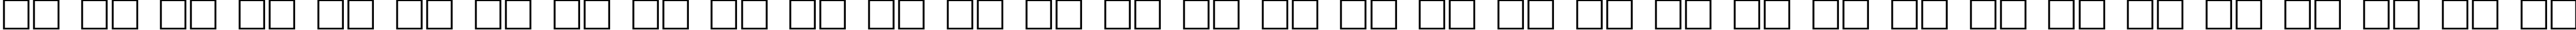 Пример написания русского алфавита шрифтом Hirosh